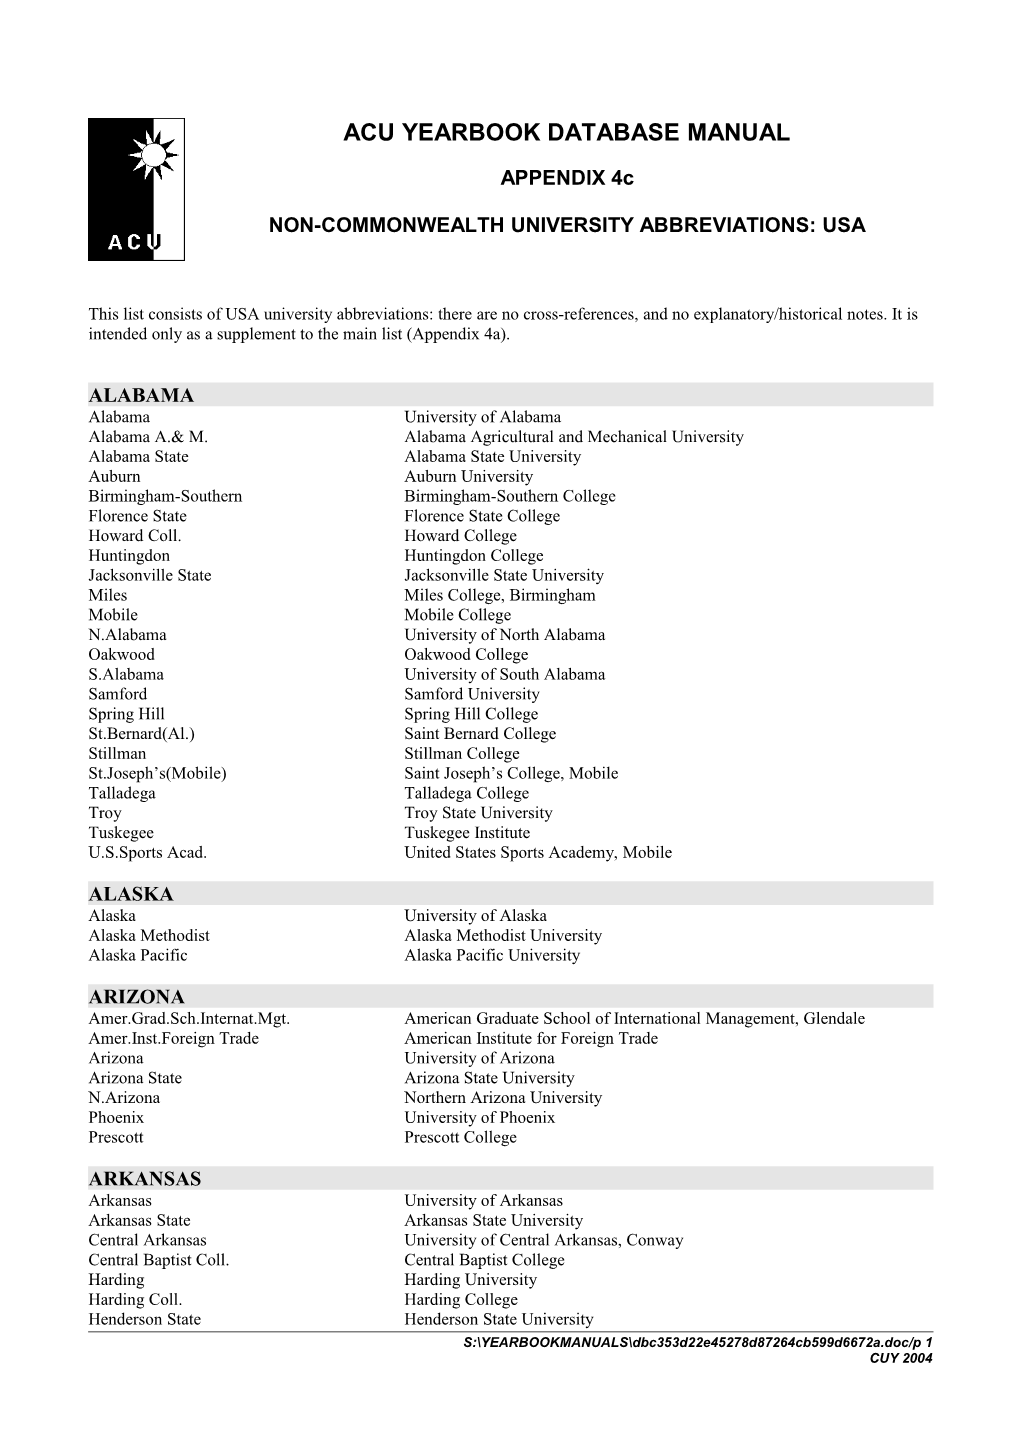 Appendix 4C/USA List/1997-98